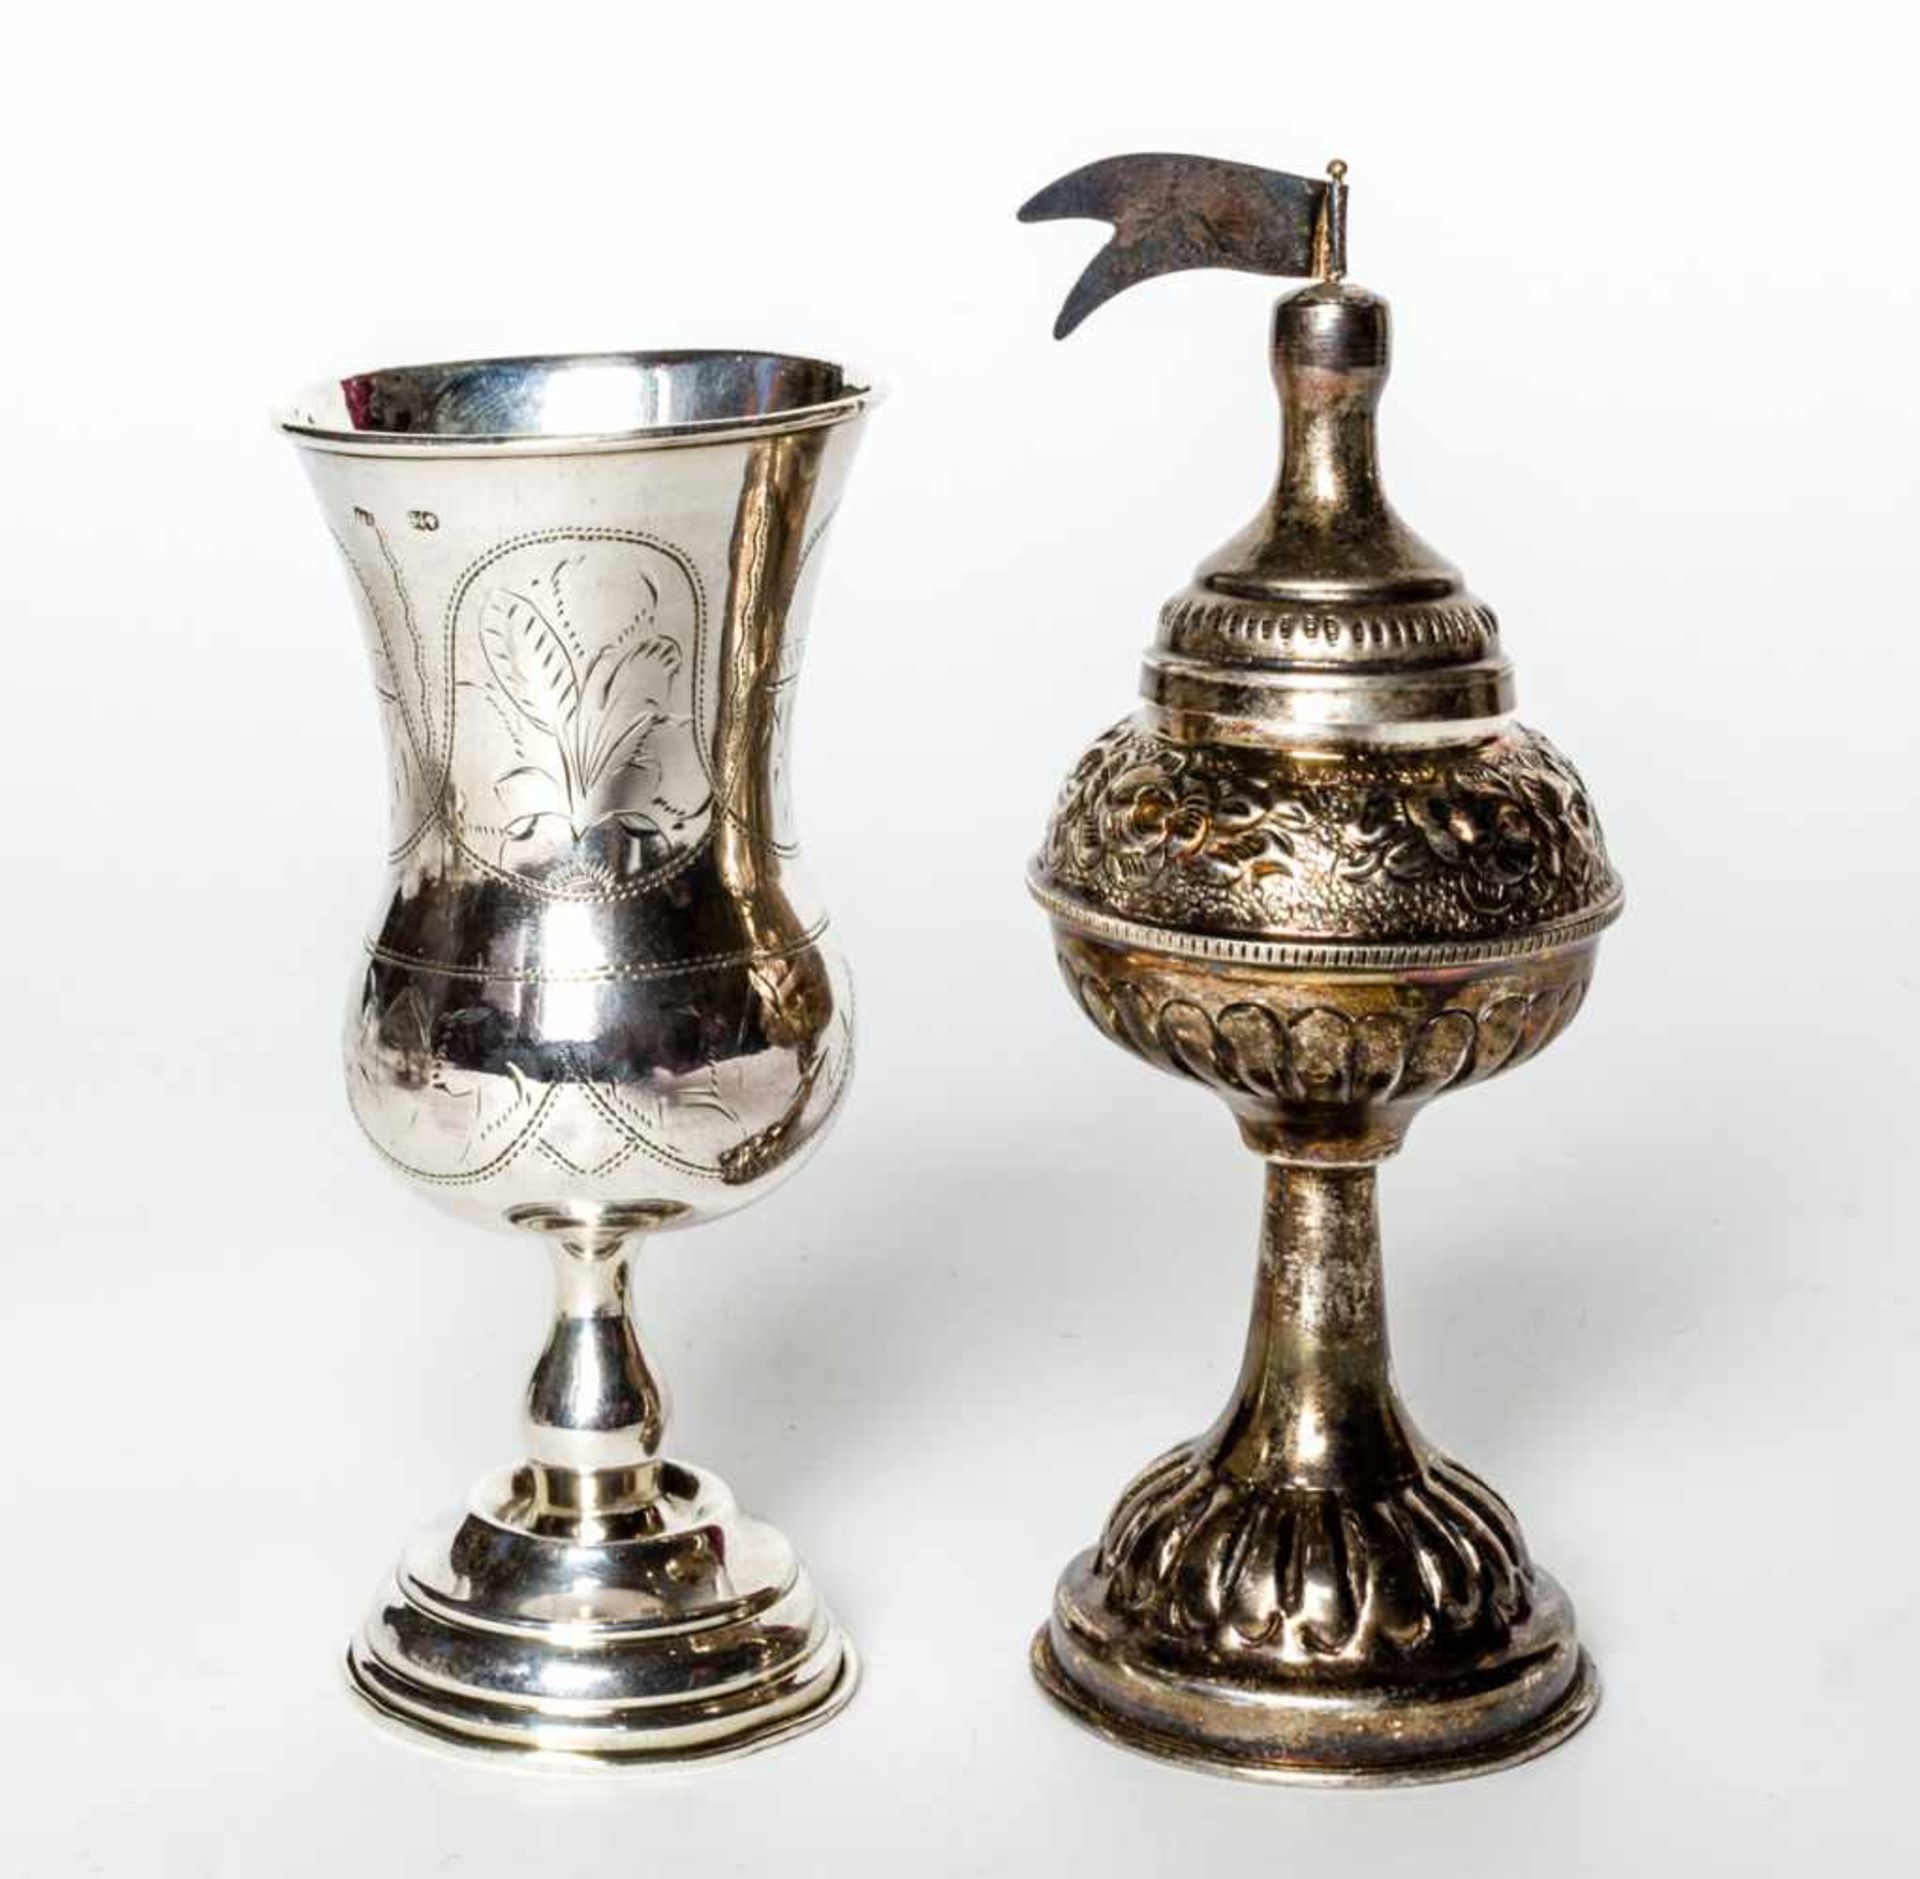 Kiddhuschbecher und Besamimbüchse Osteuropa (Russland ?), Silber (144g) Links: d: 6 cm, h: 12,5